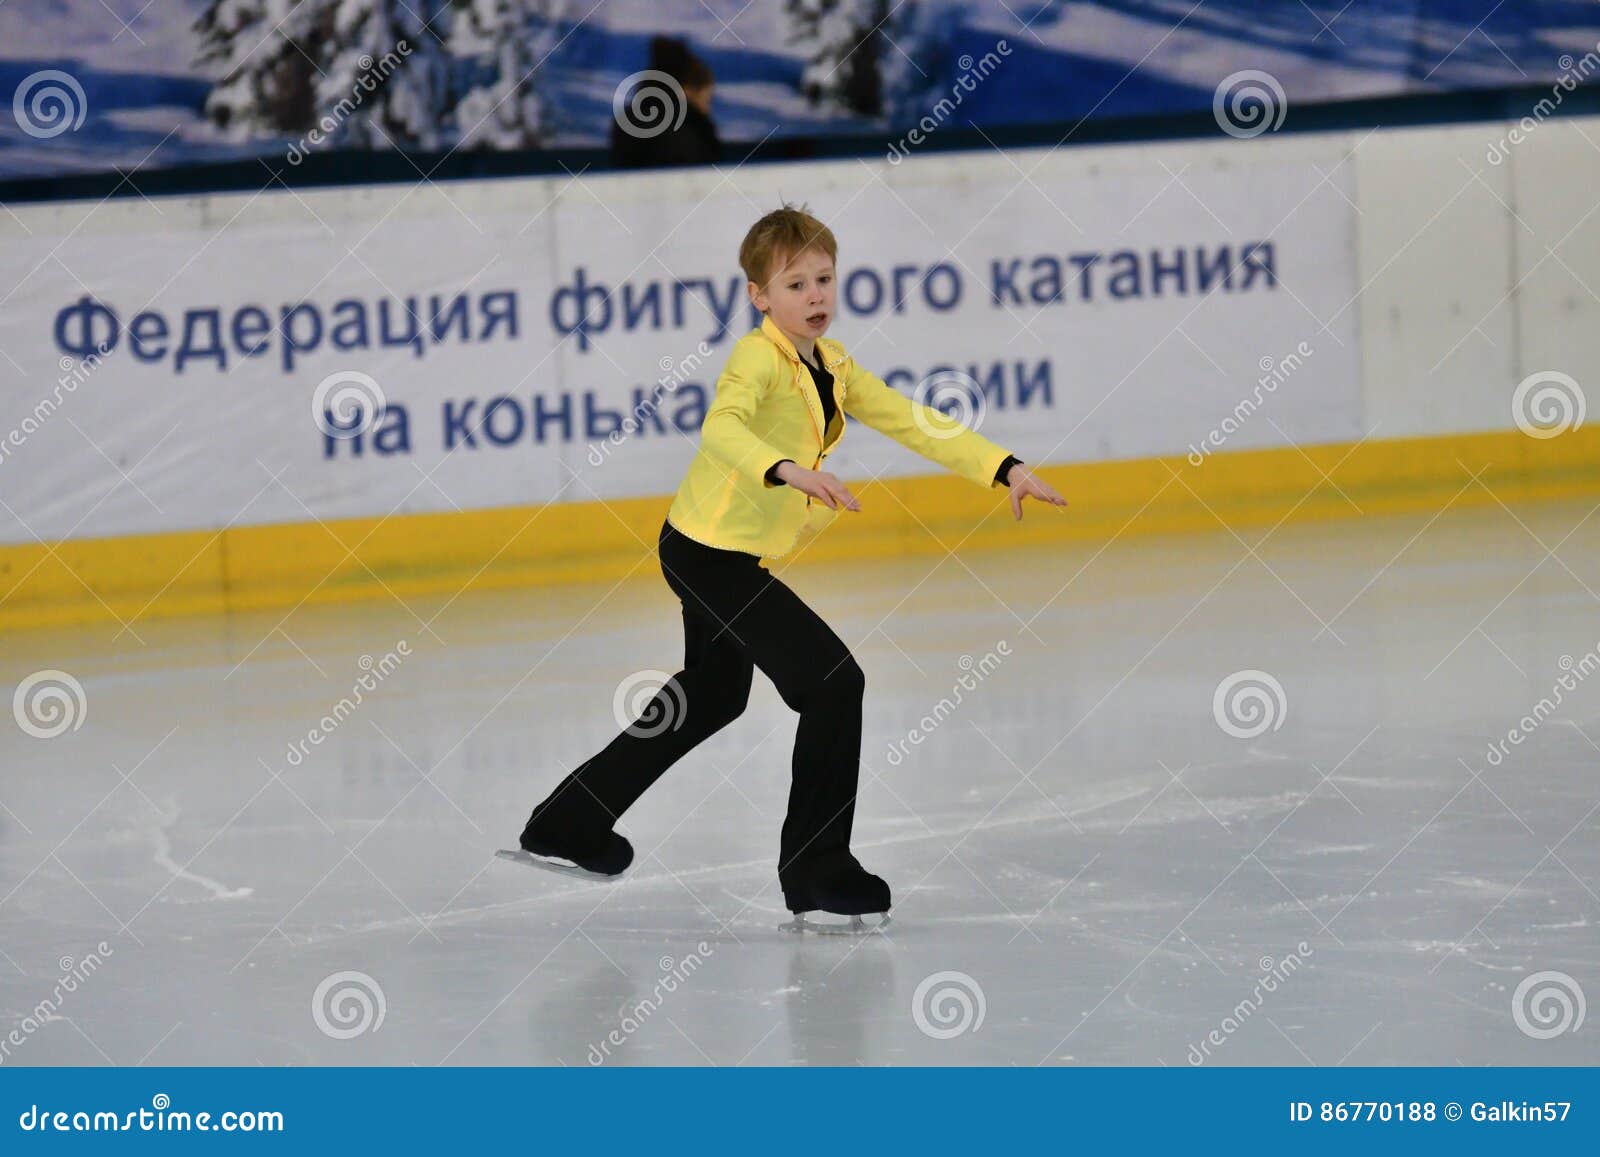 equipo ruso de patinaje artistico que data